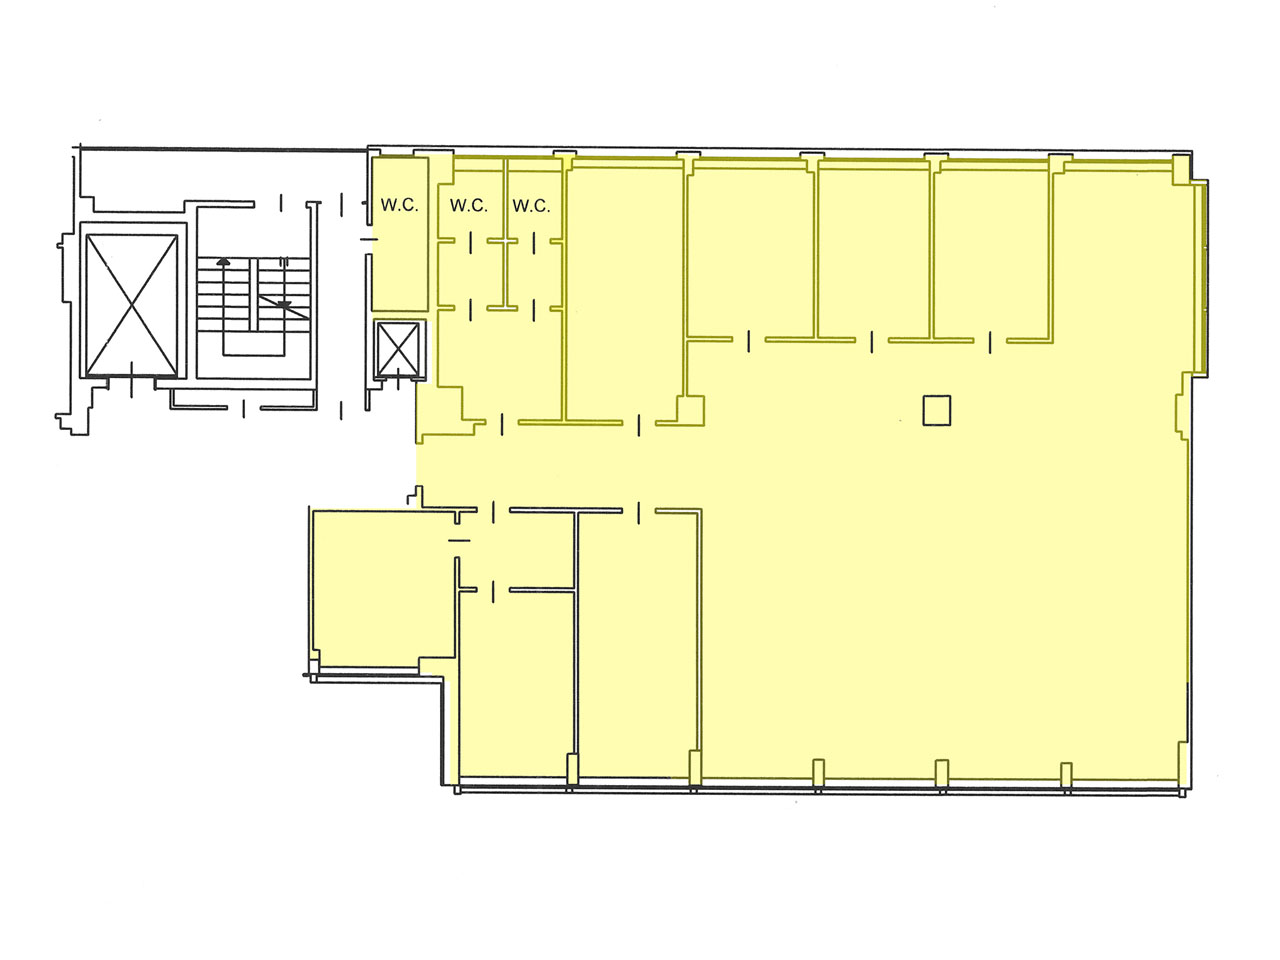 Planimetria ufficio in affitto 305 mq secondo piano, via Fantoli 7 zona Mecenate CAMM Linate